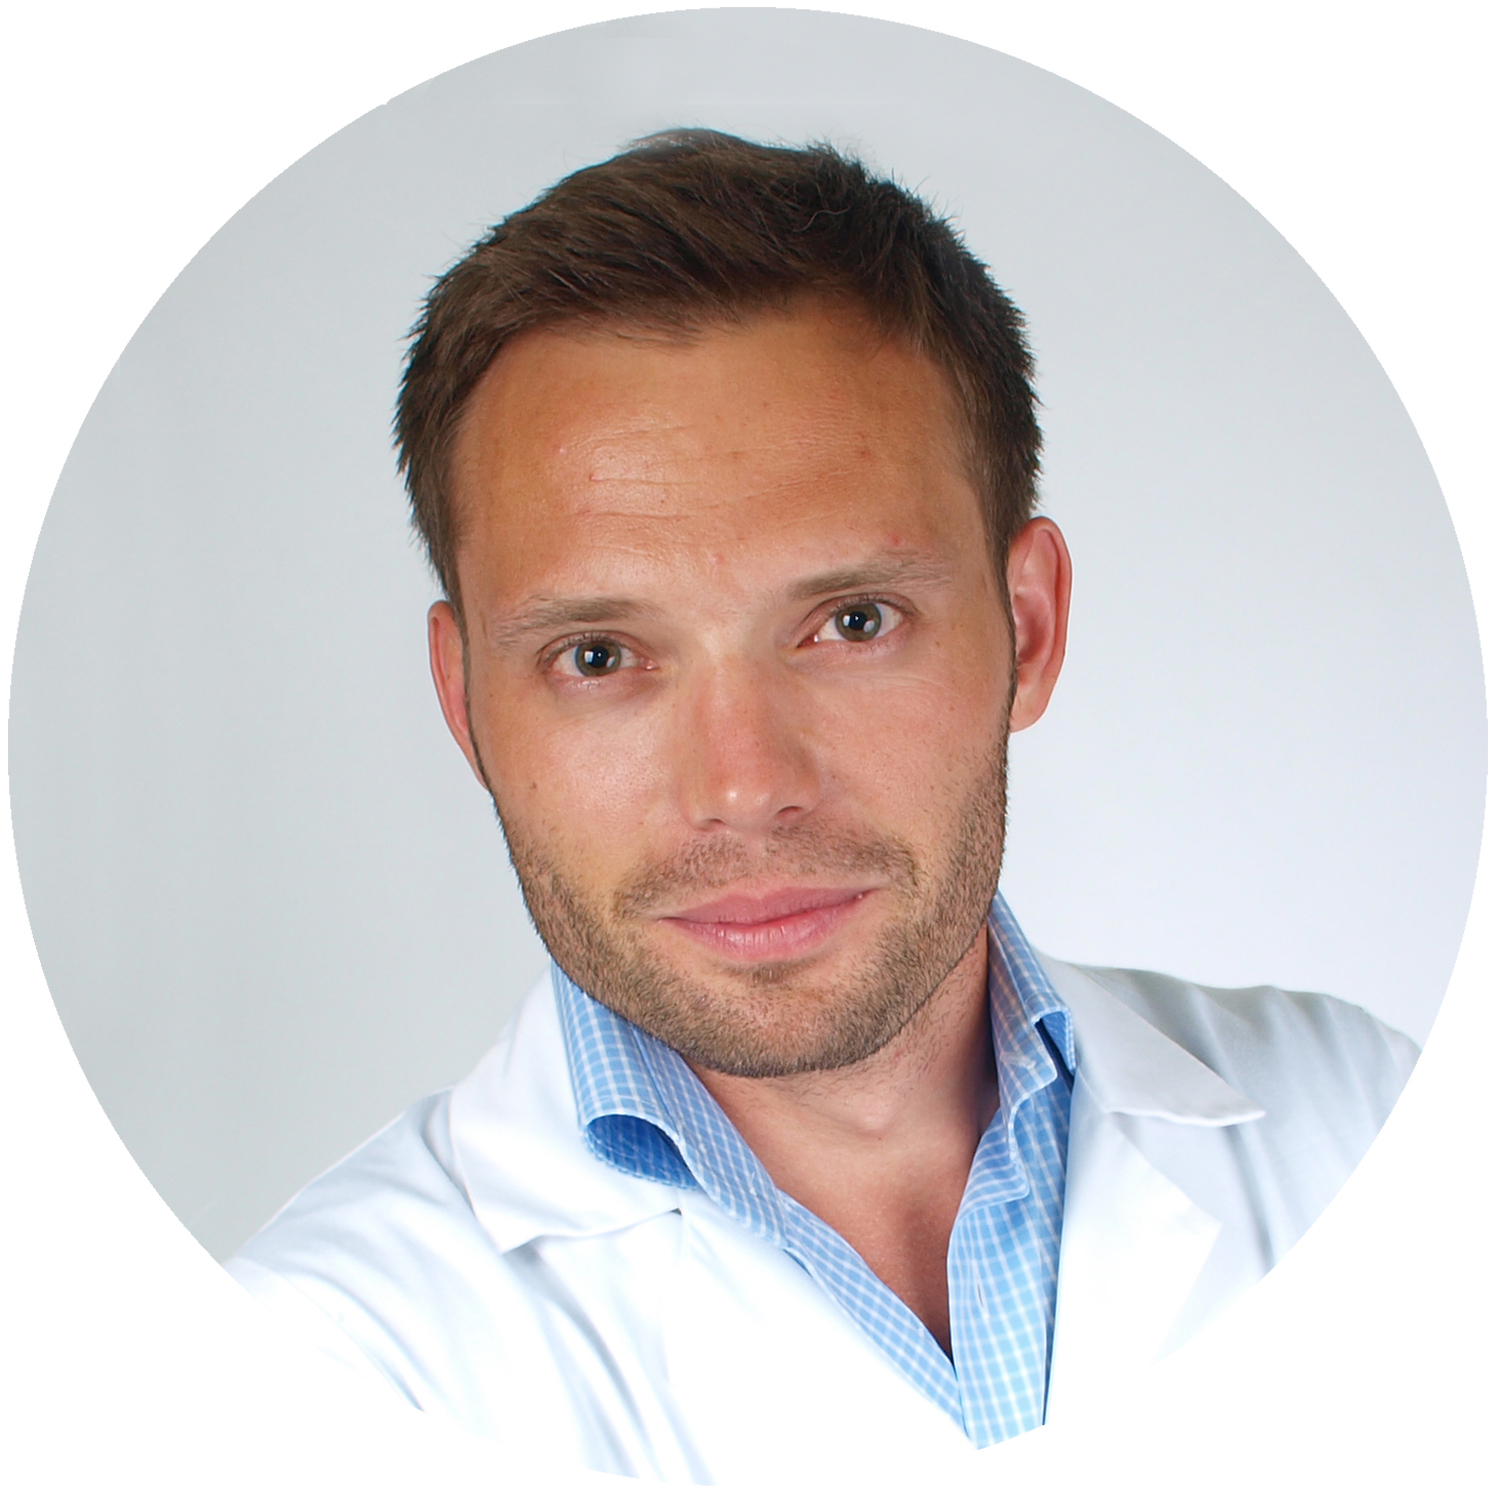 Ginekolog, dr n.med. Marcin Mika